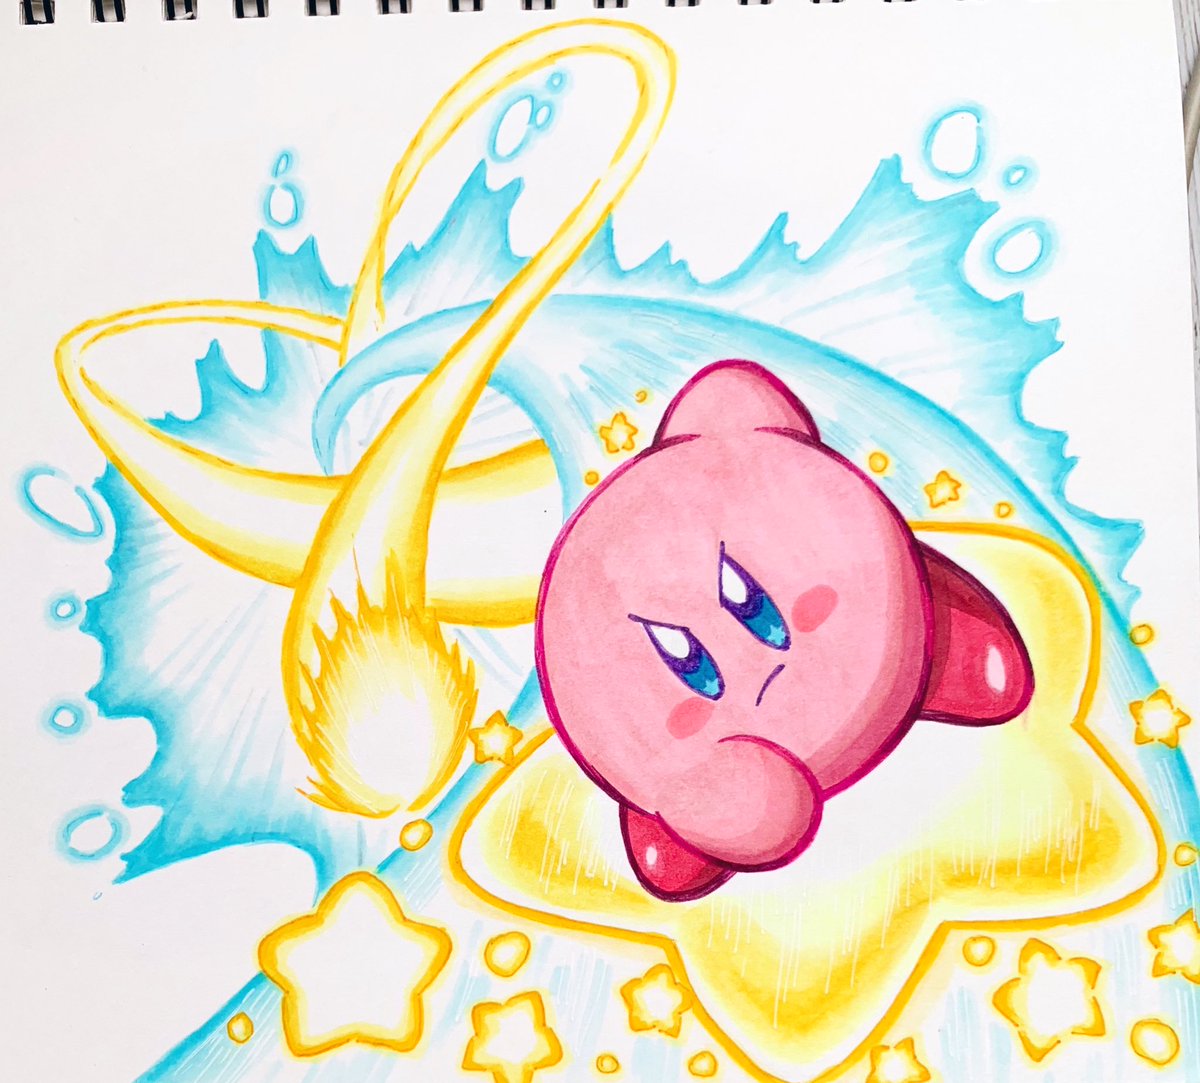 あら カービィ 強くてかっこいい Kirby カービィ Illust イラスト T Co Umh9bx9n3n Twitter